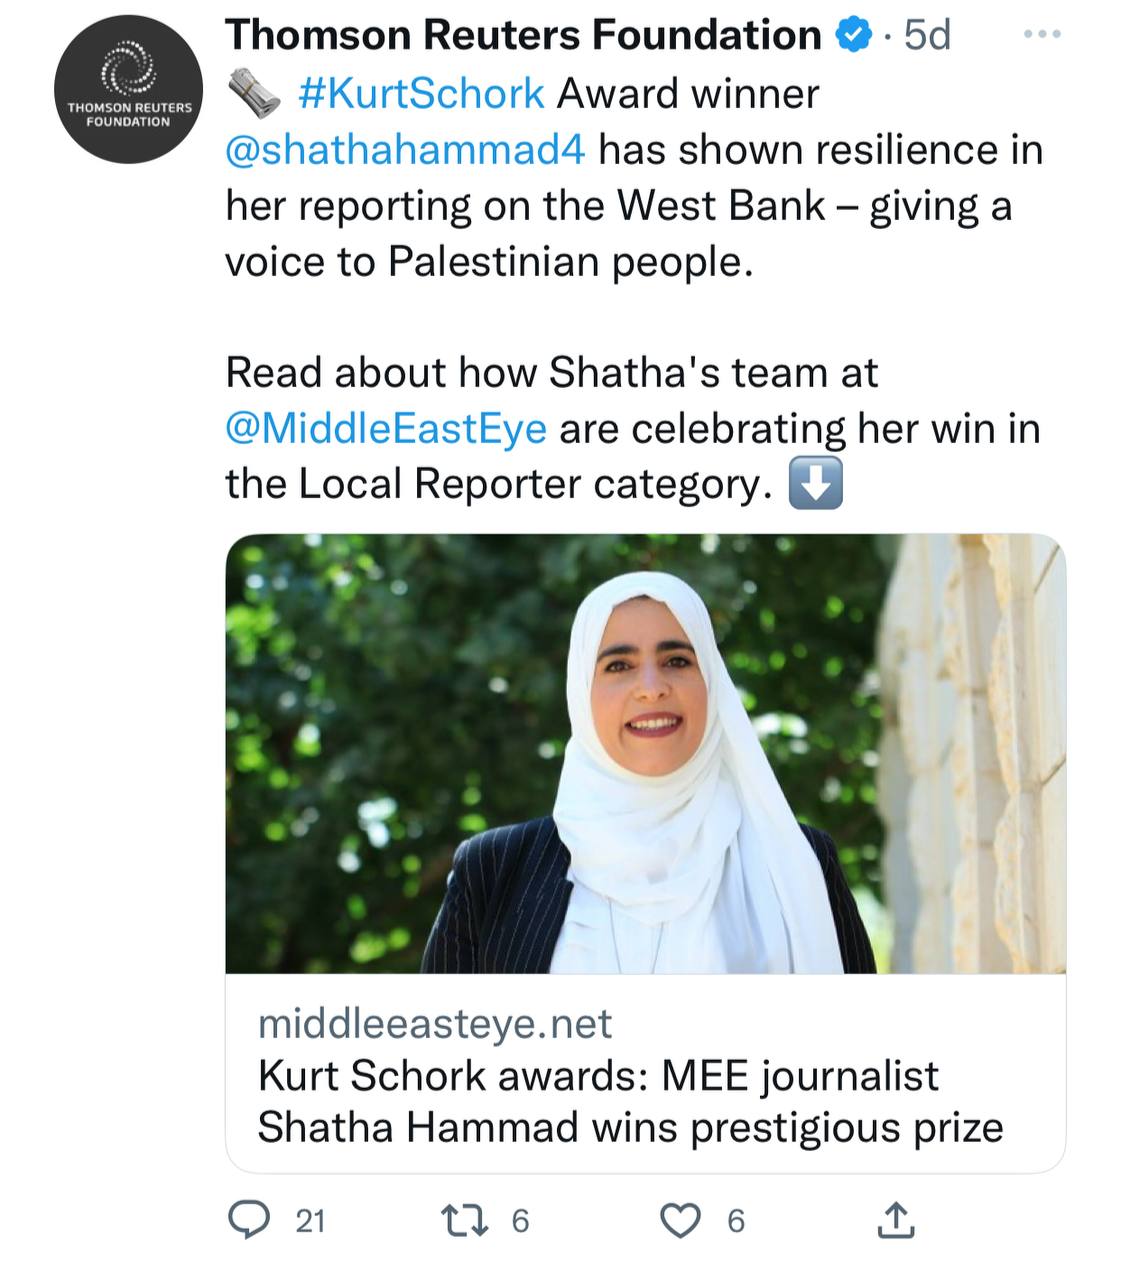 خبر منح الجائزة للصحافية شذى حماد كما نشرته "رويترز" وسحبته لاحقًا